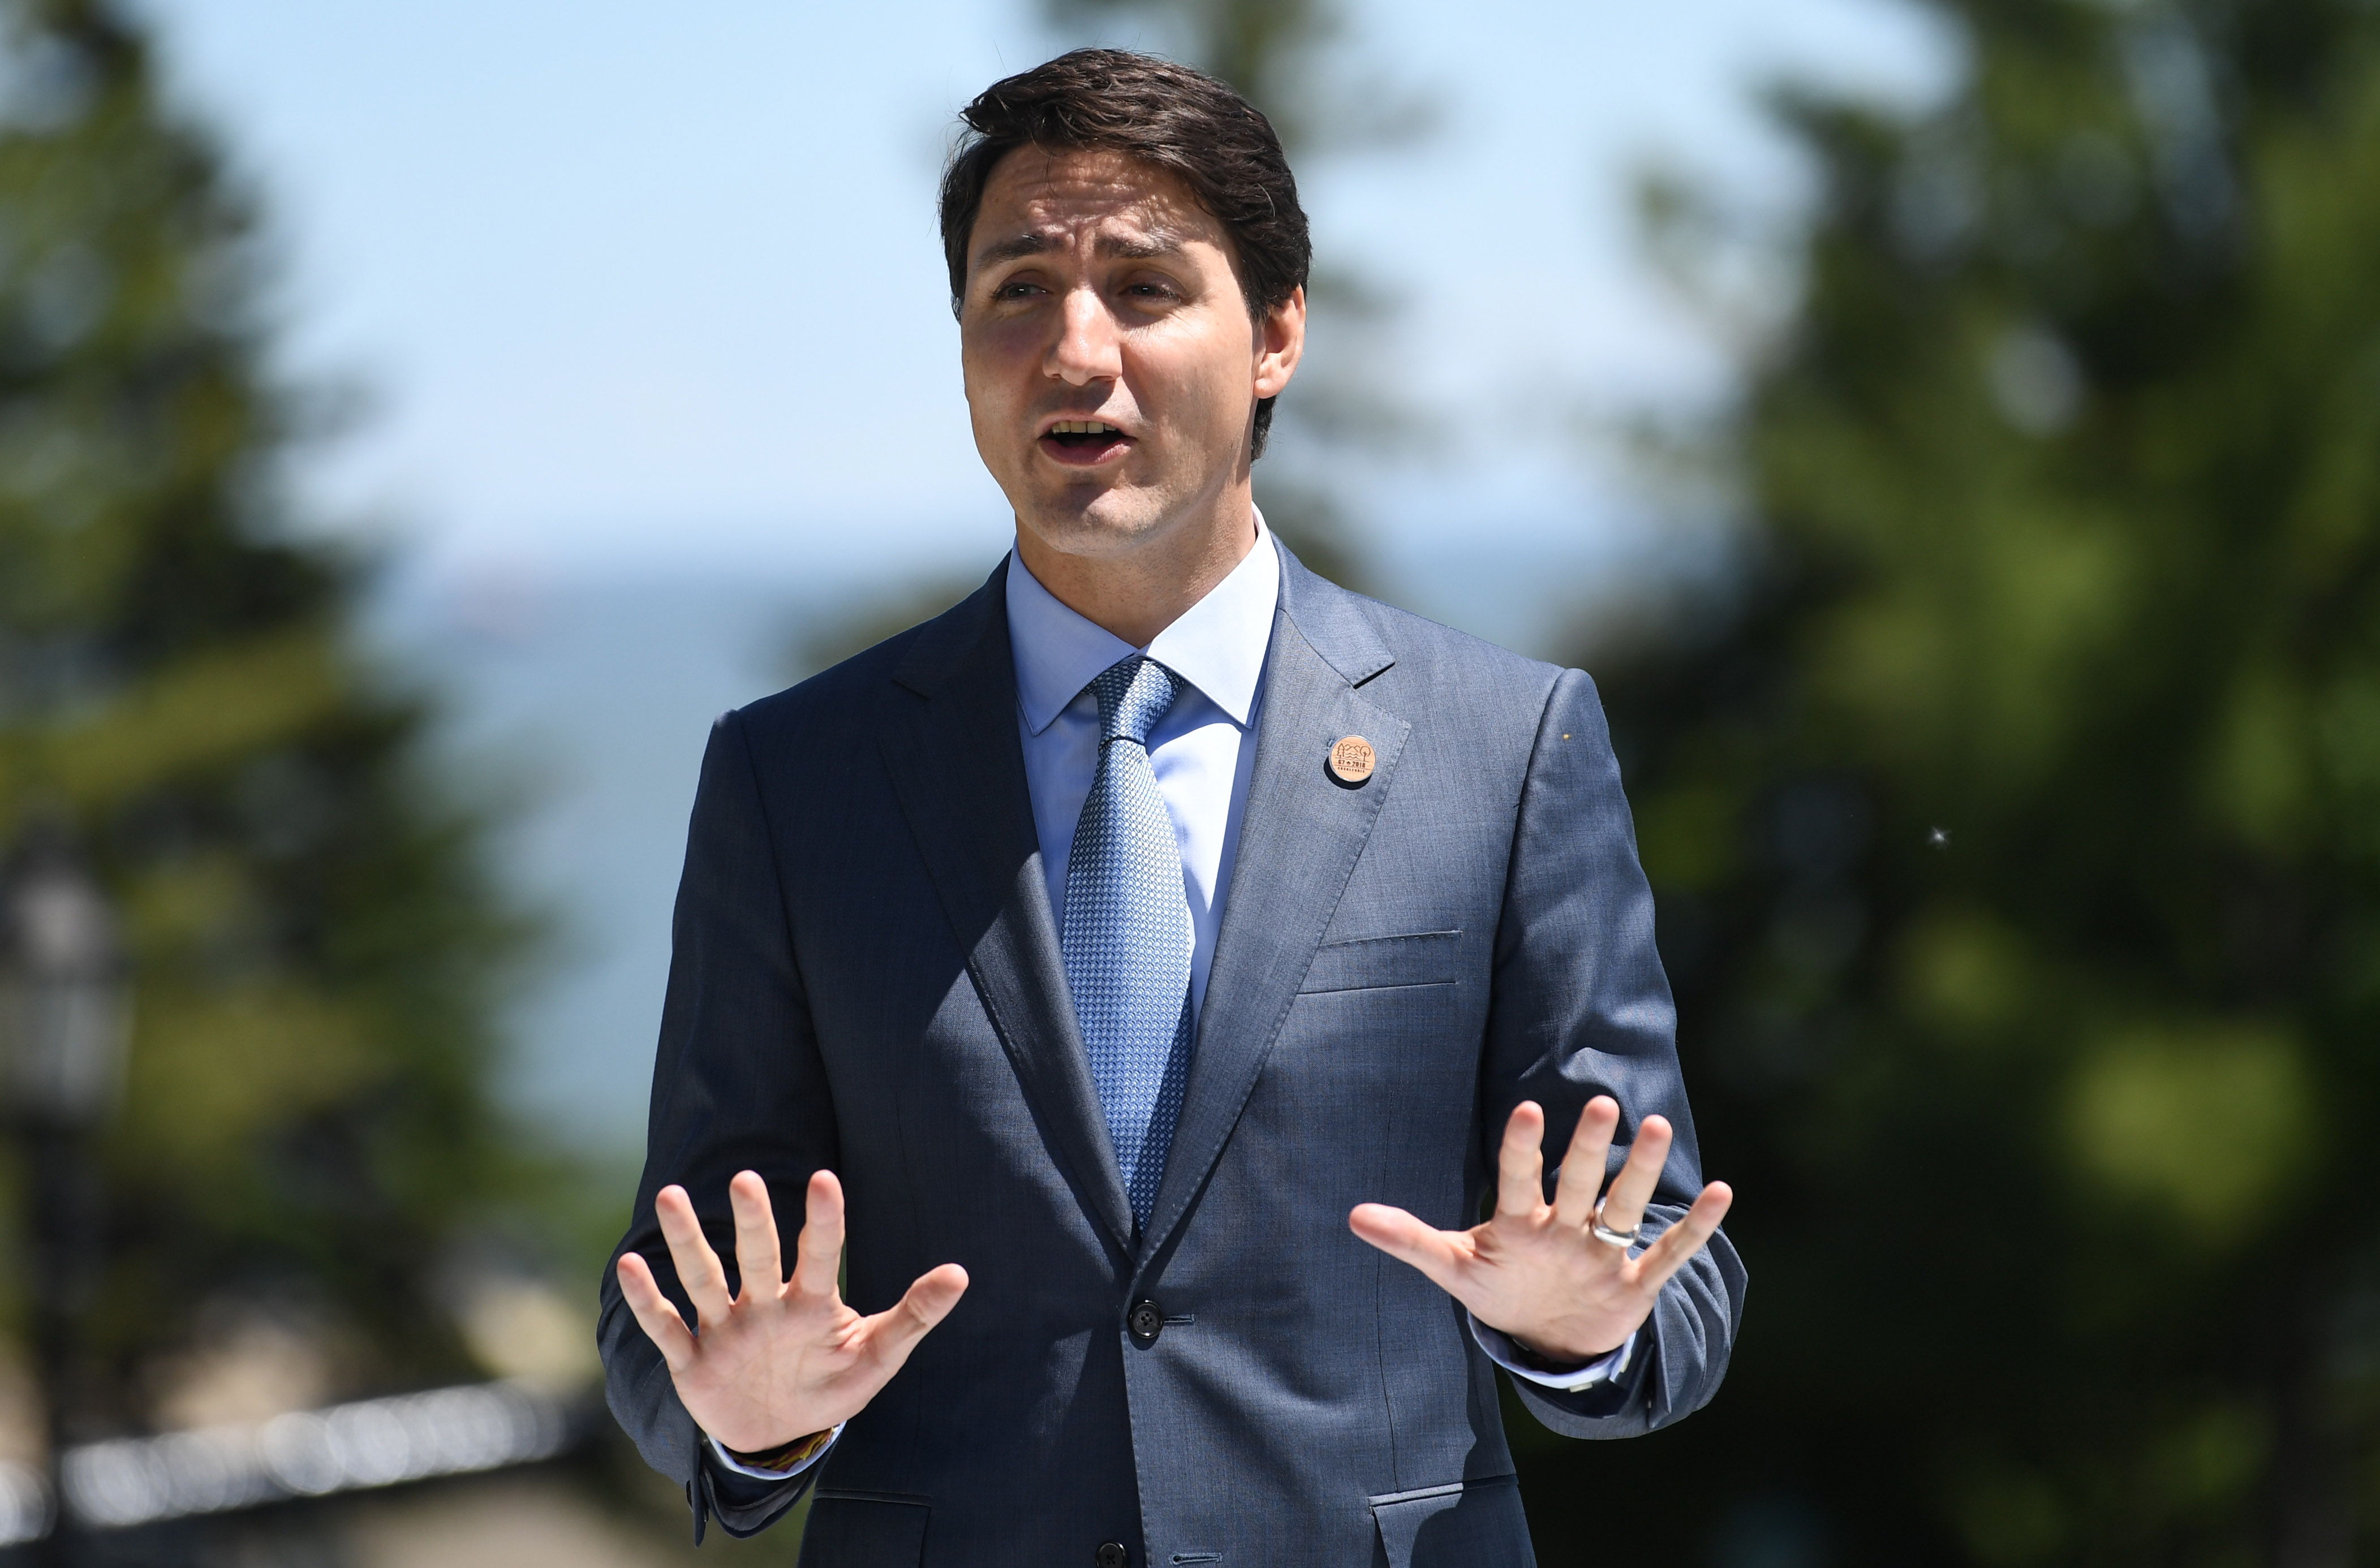 Trudeau se disculpa en nombre de Canadá por el homenaje en el Parlamento a un nazi